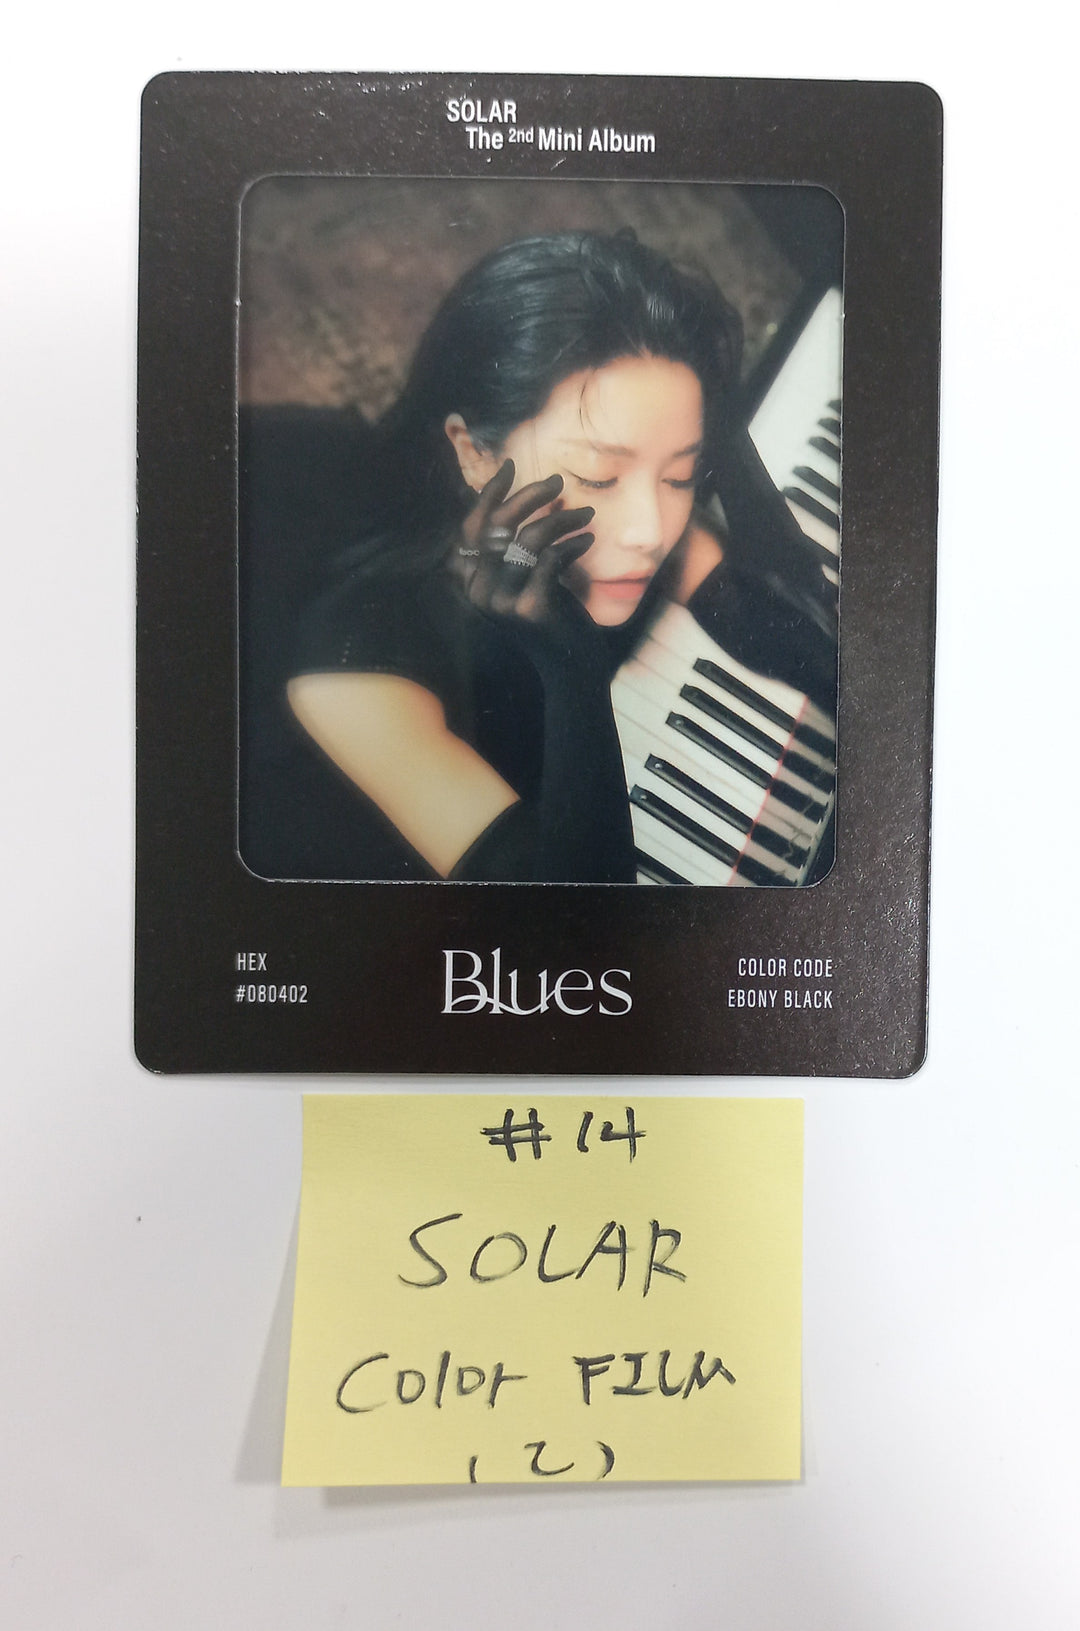 SOLAR "COLOURS" - Official Photocard, Color Film [Palette Ver.] [24.5.9]